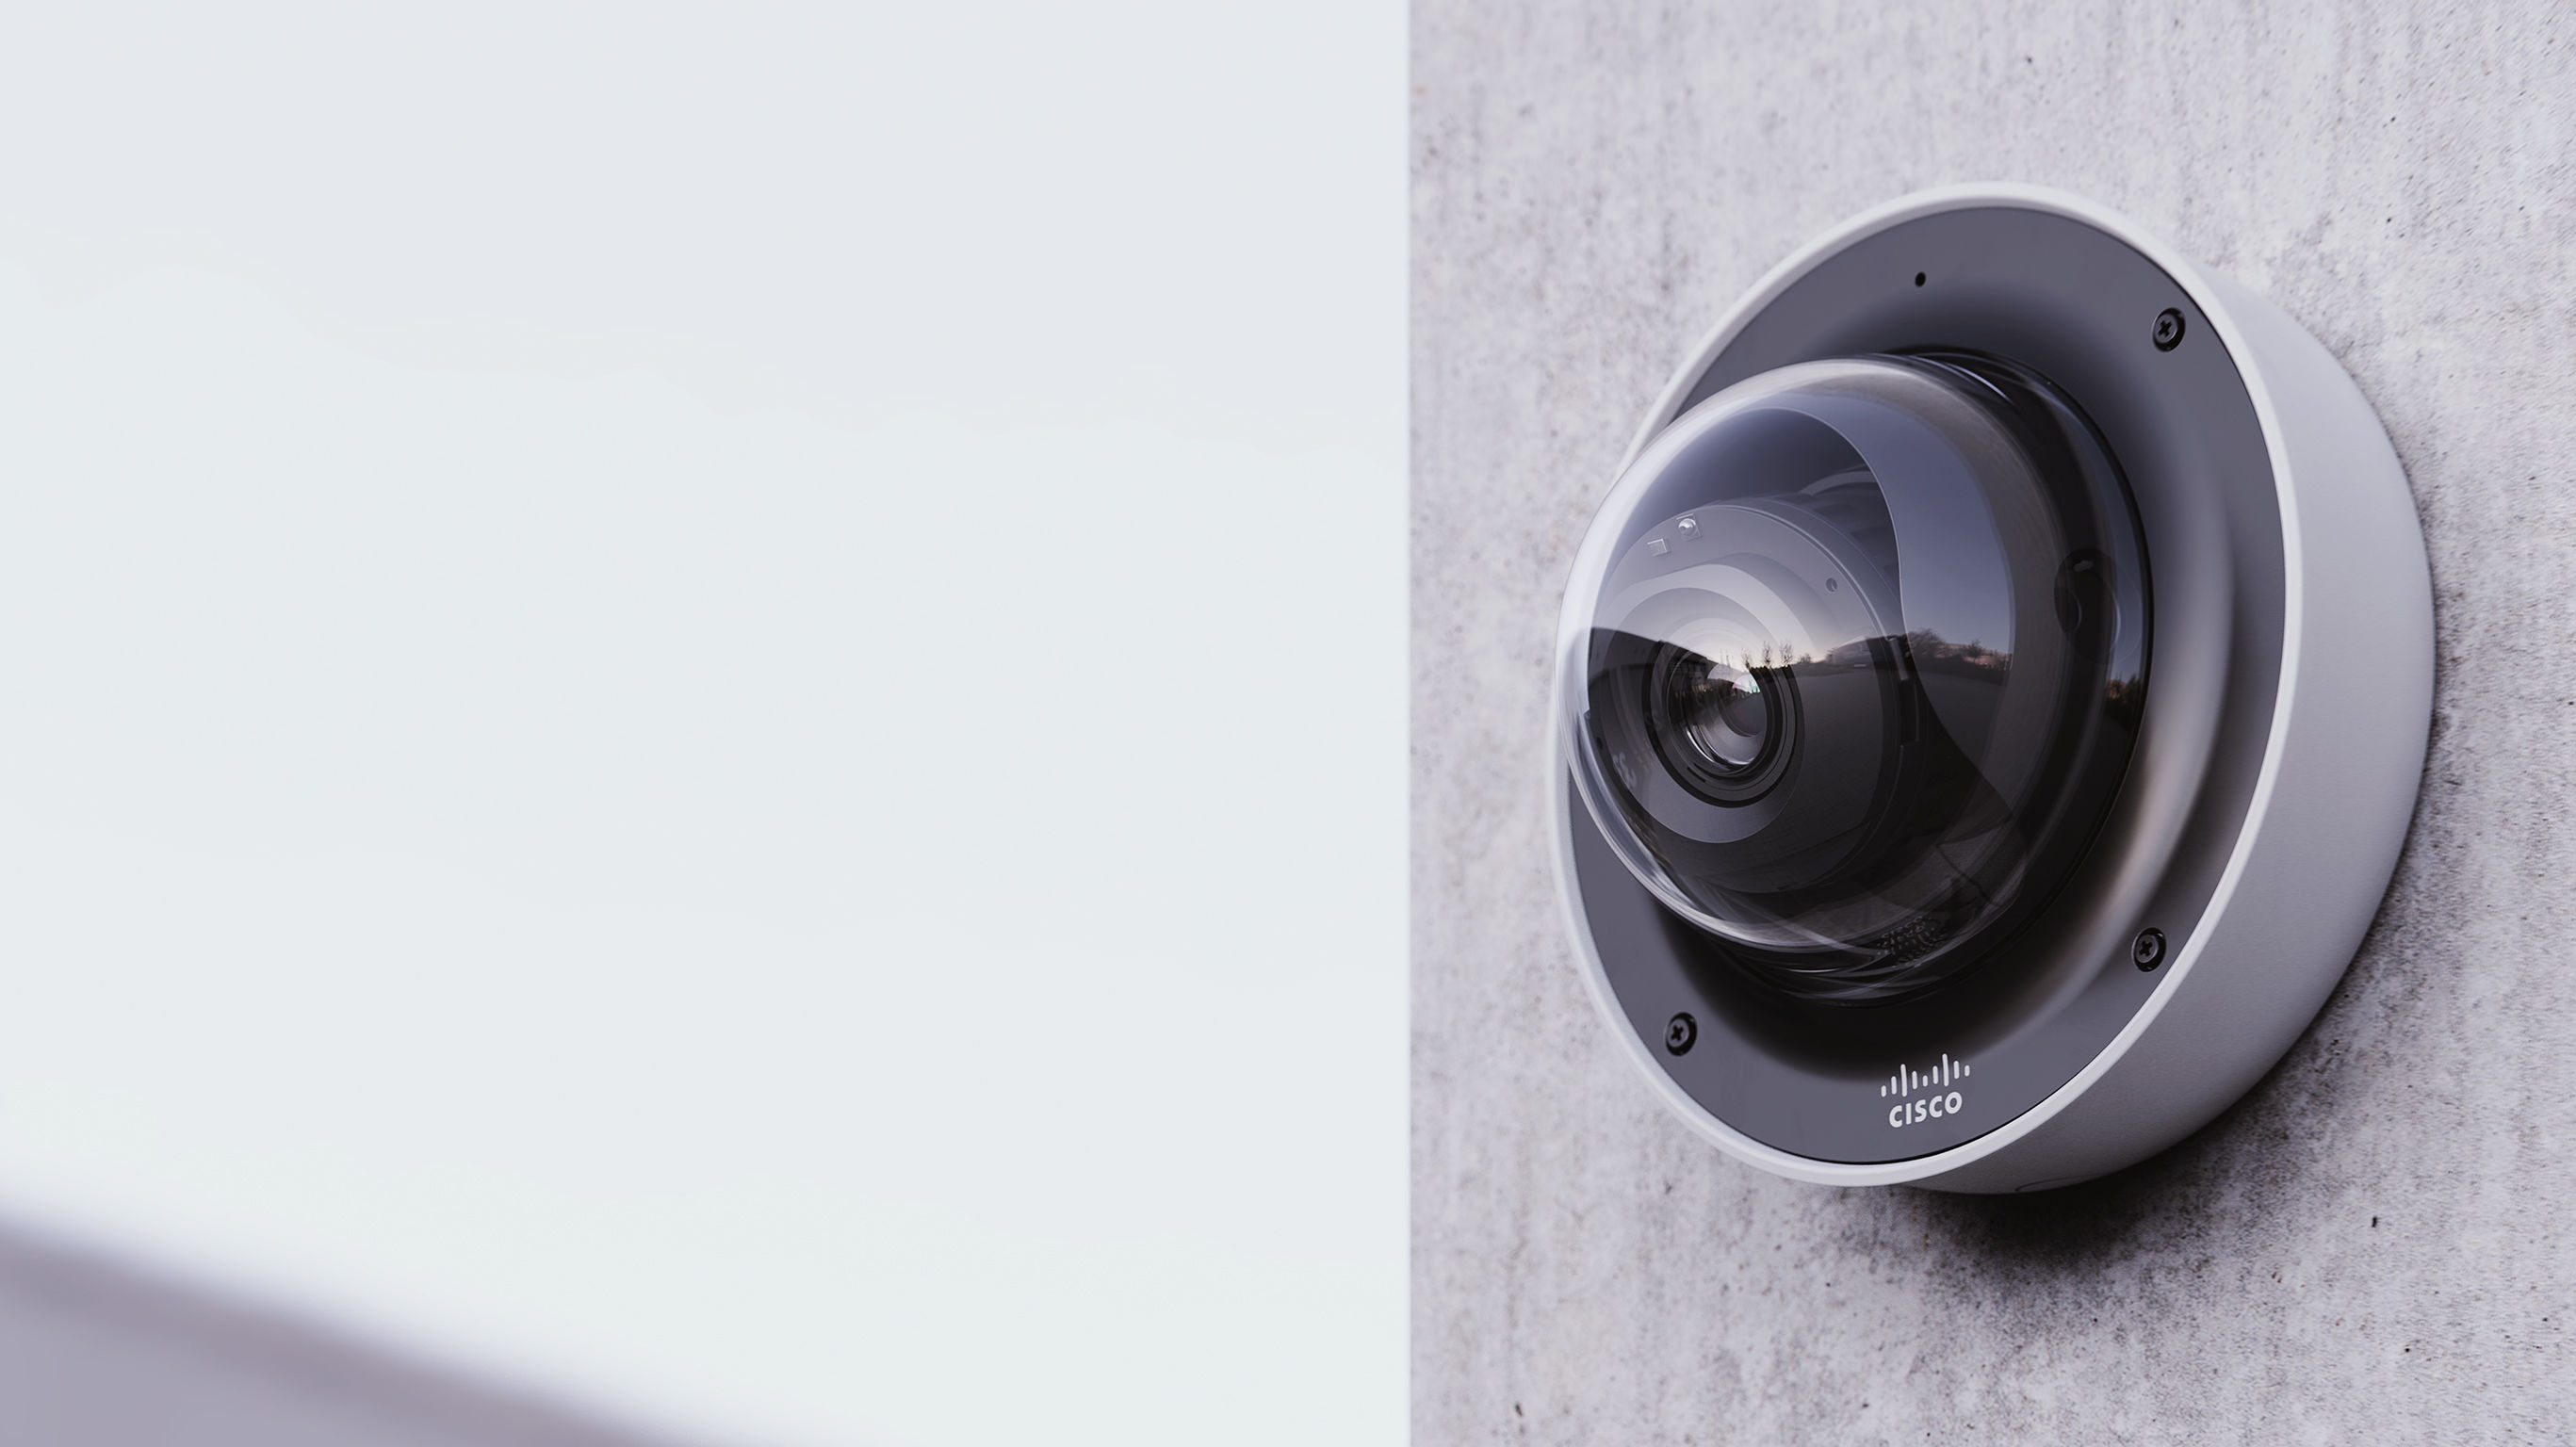 cisco security camera systems